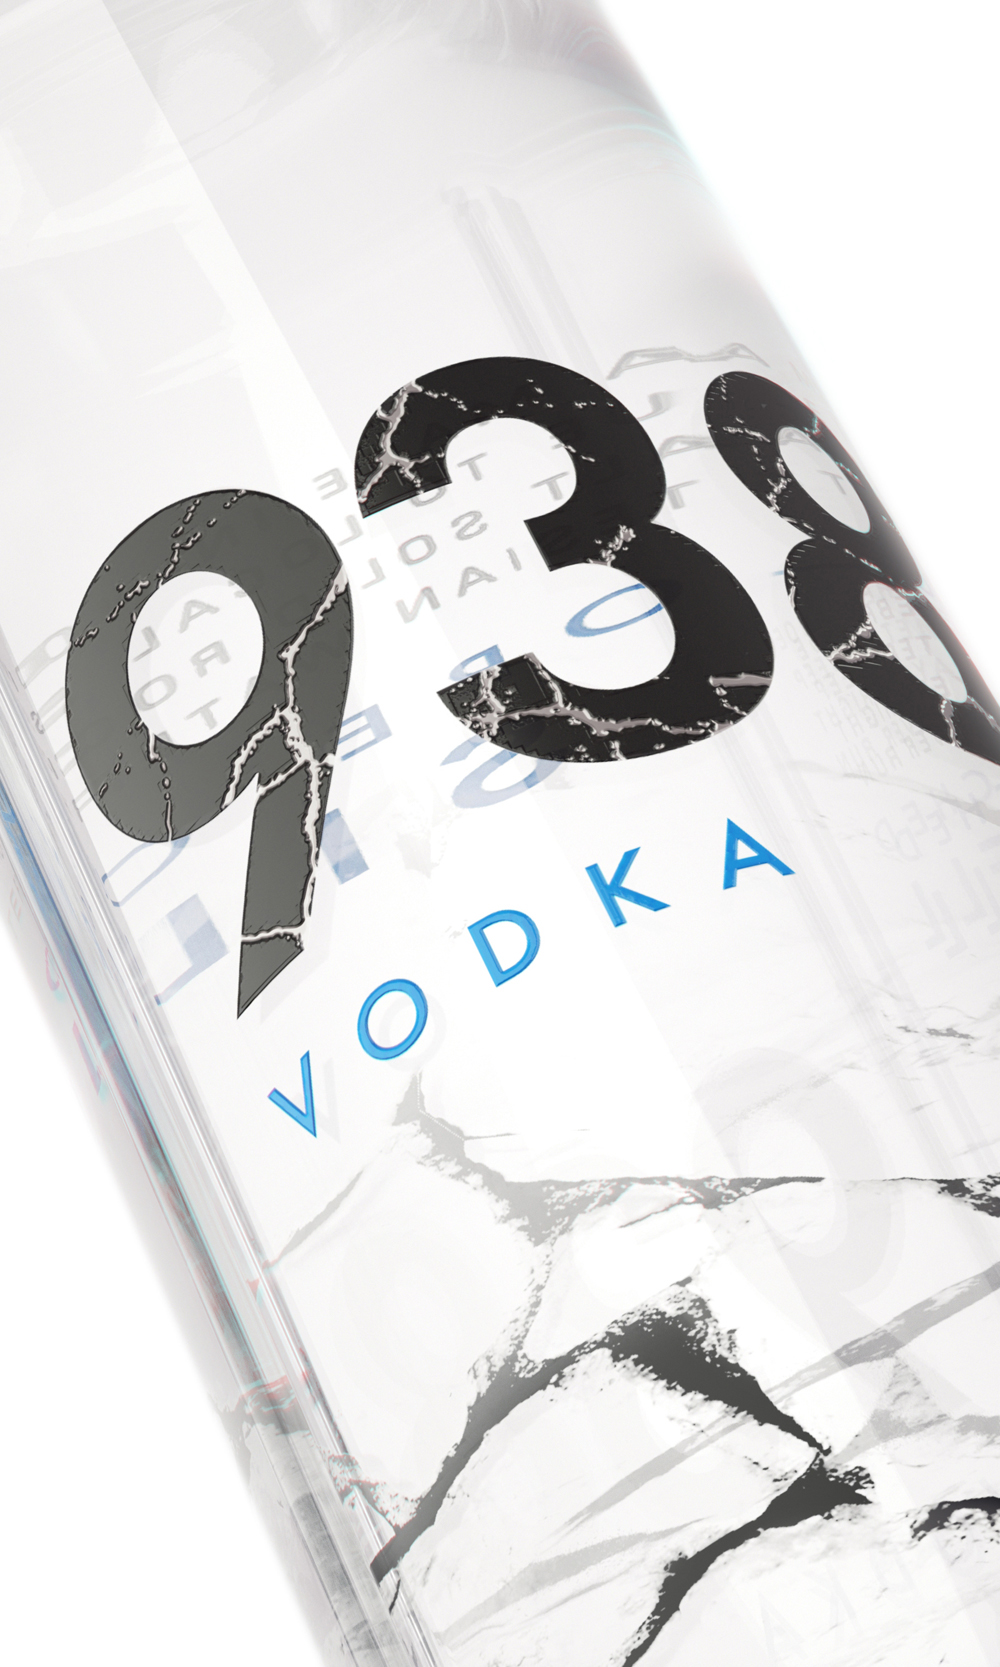 Vodka packaging design bottle label design Label 3d Visualisation Render